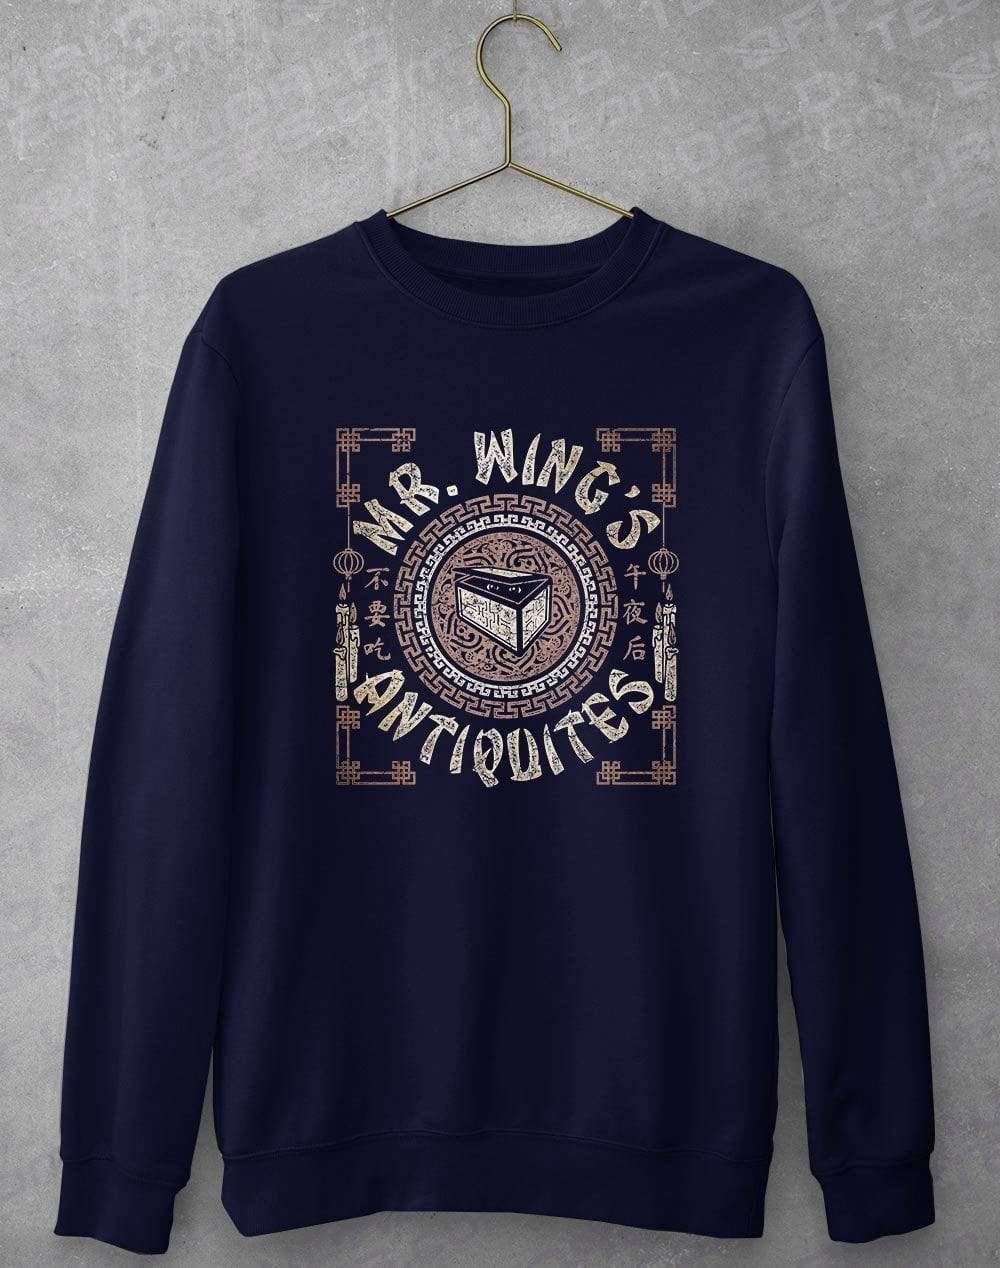 Mr Wings Antiquites Sweatshirt S / Navy  - Off World Tees